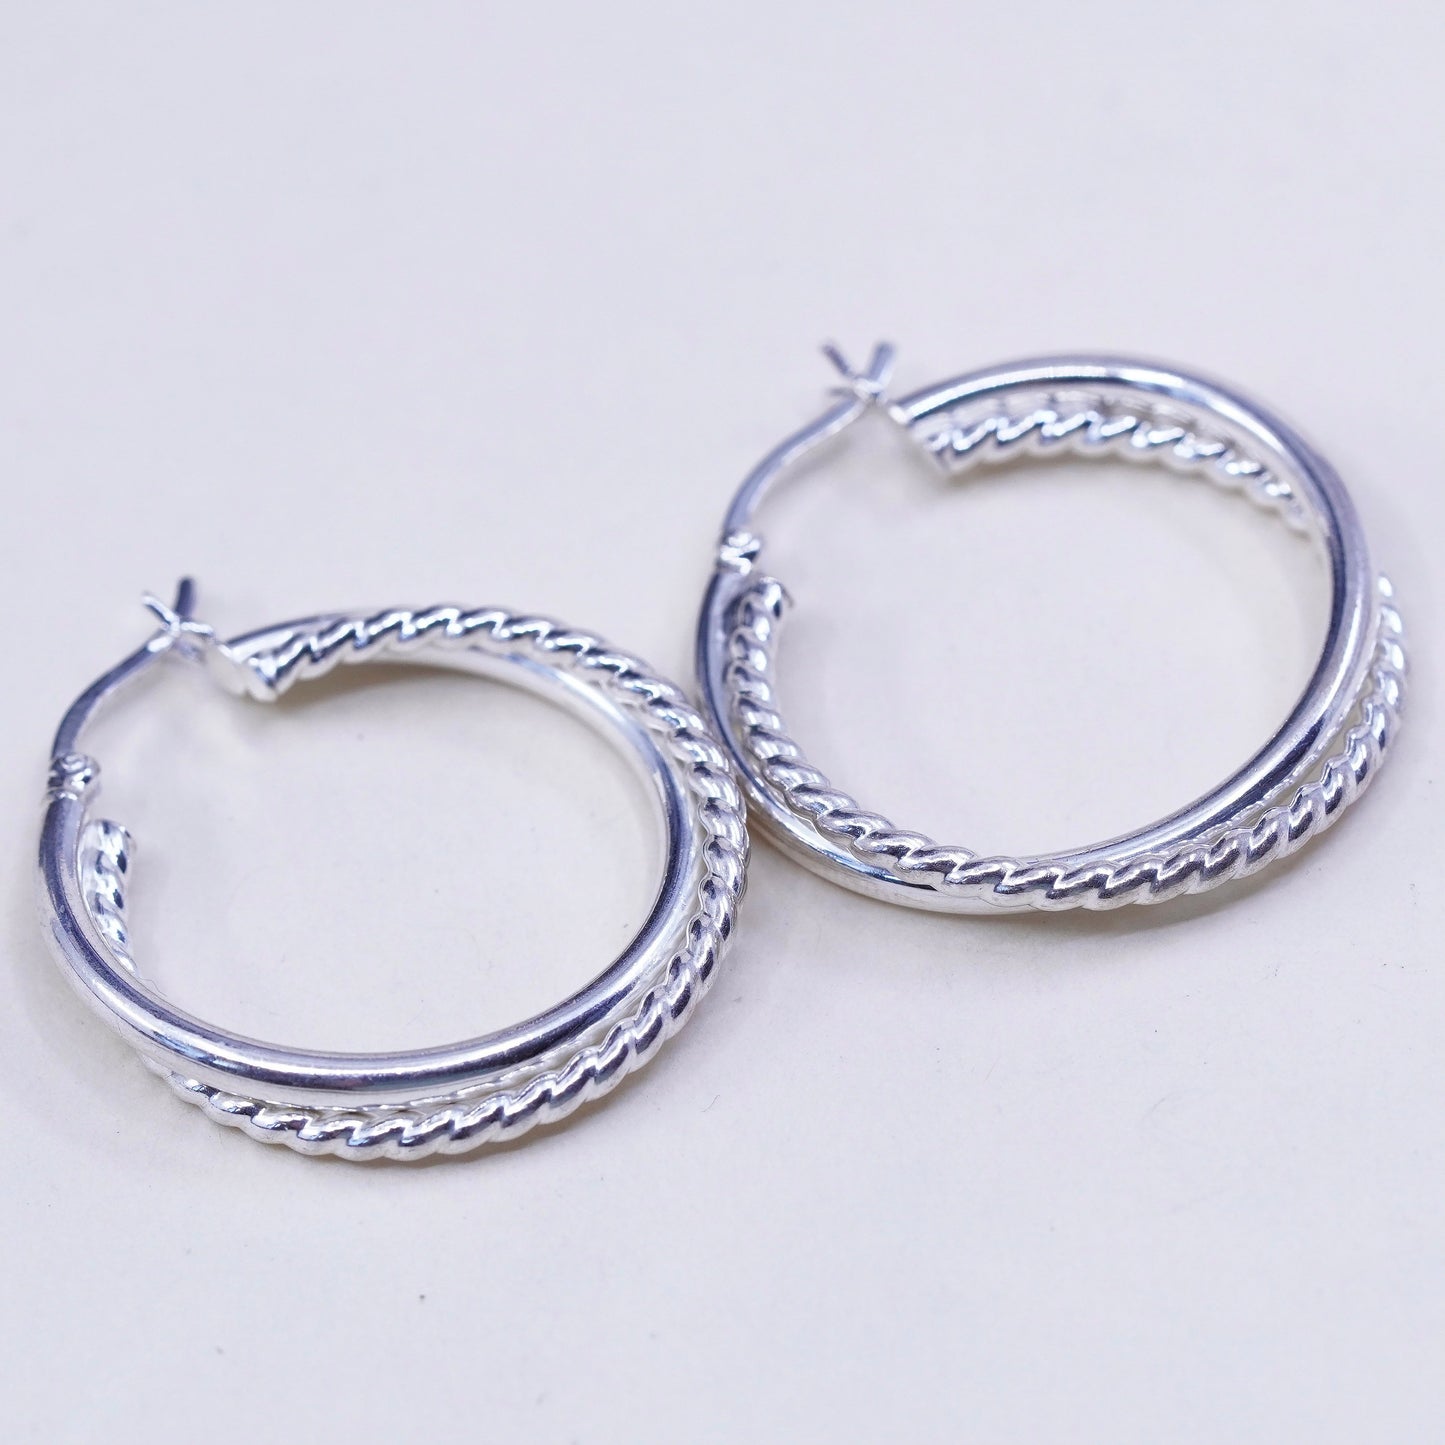 1.25”, Vintage sterling silver loop earrings, entwined twisted primitive hoops